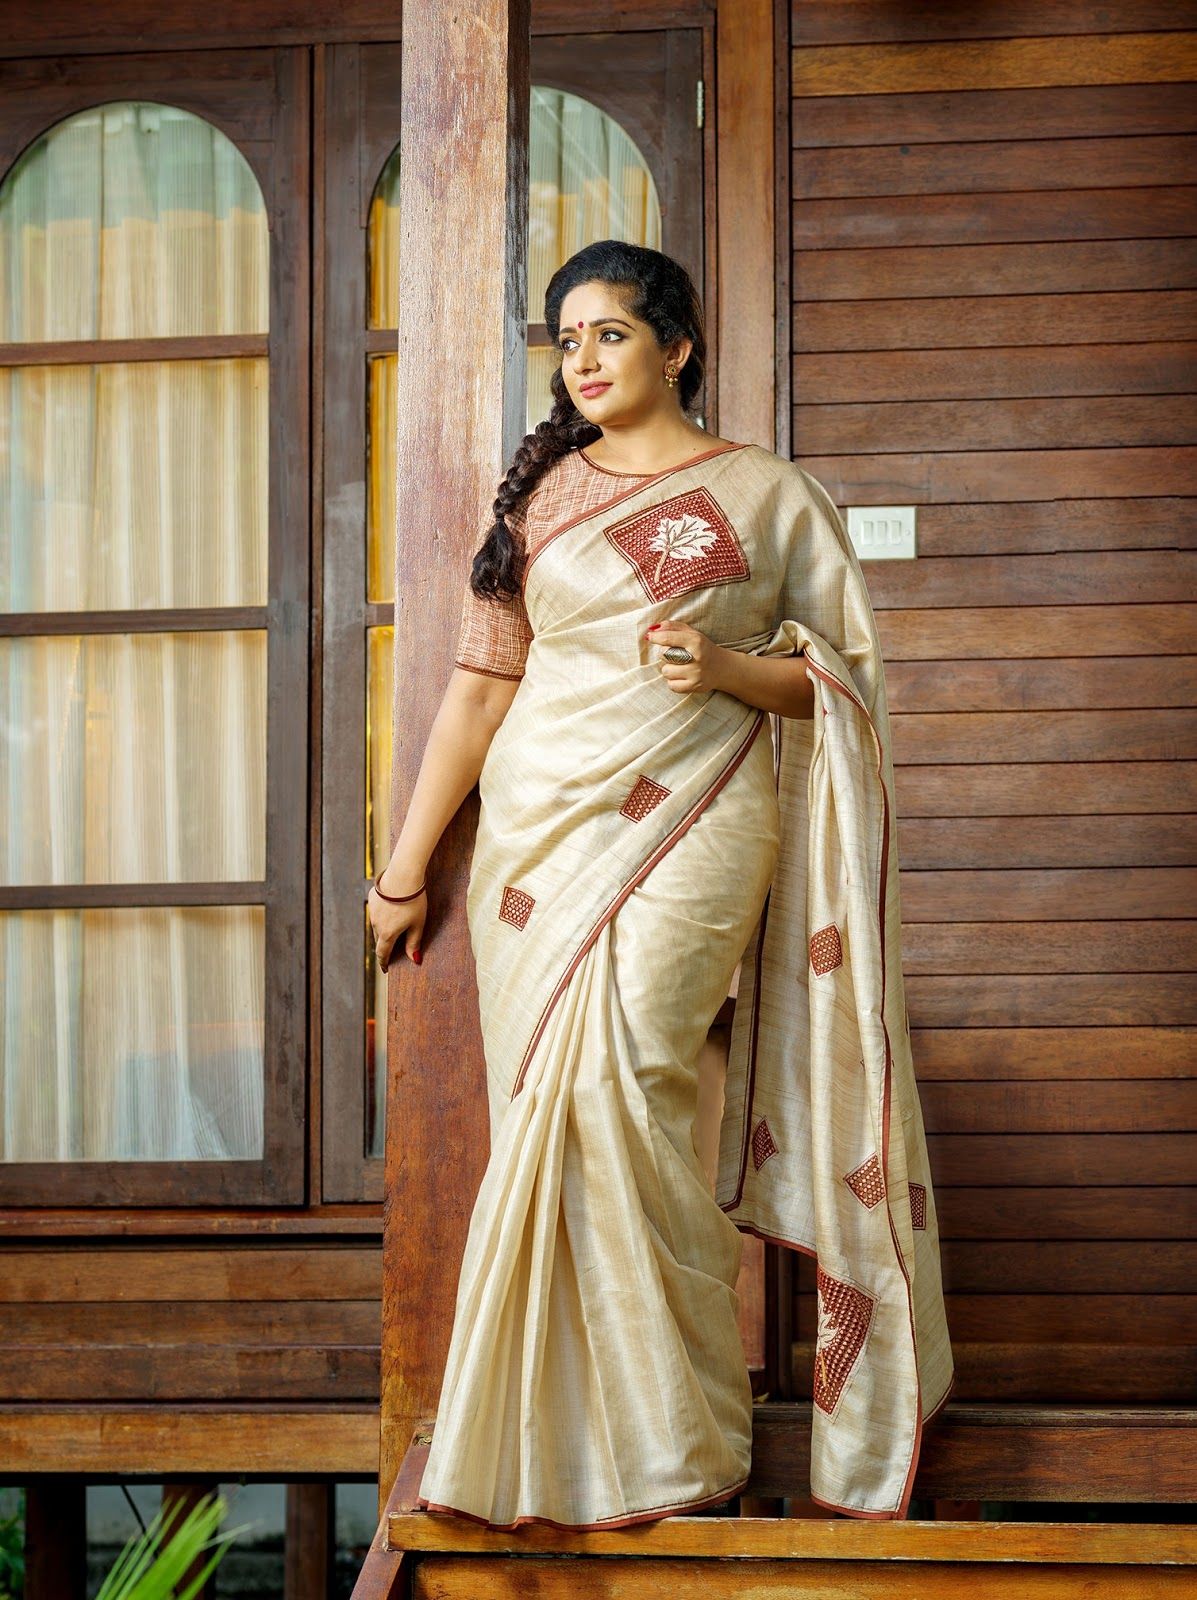 Kavya Madhavan Kerala Saree .teahub.io